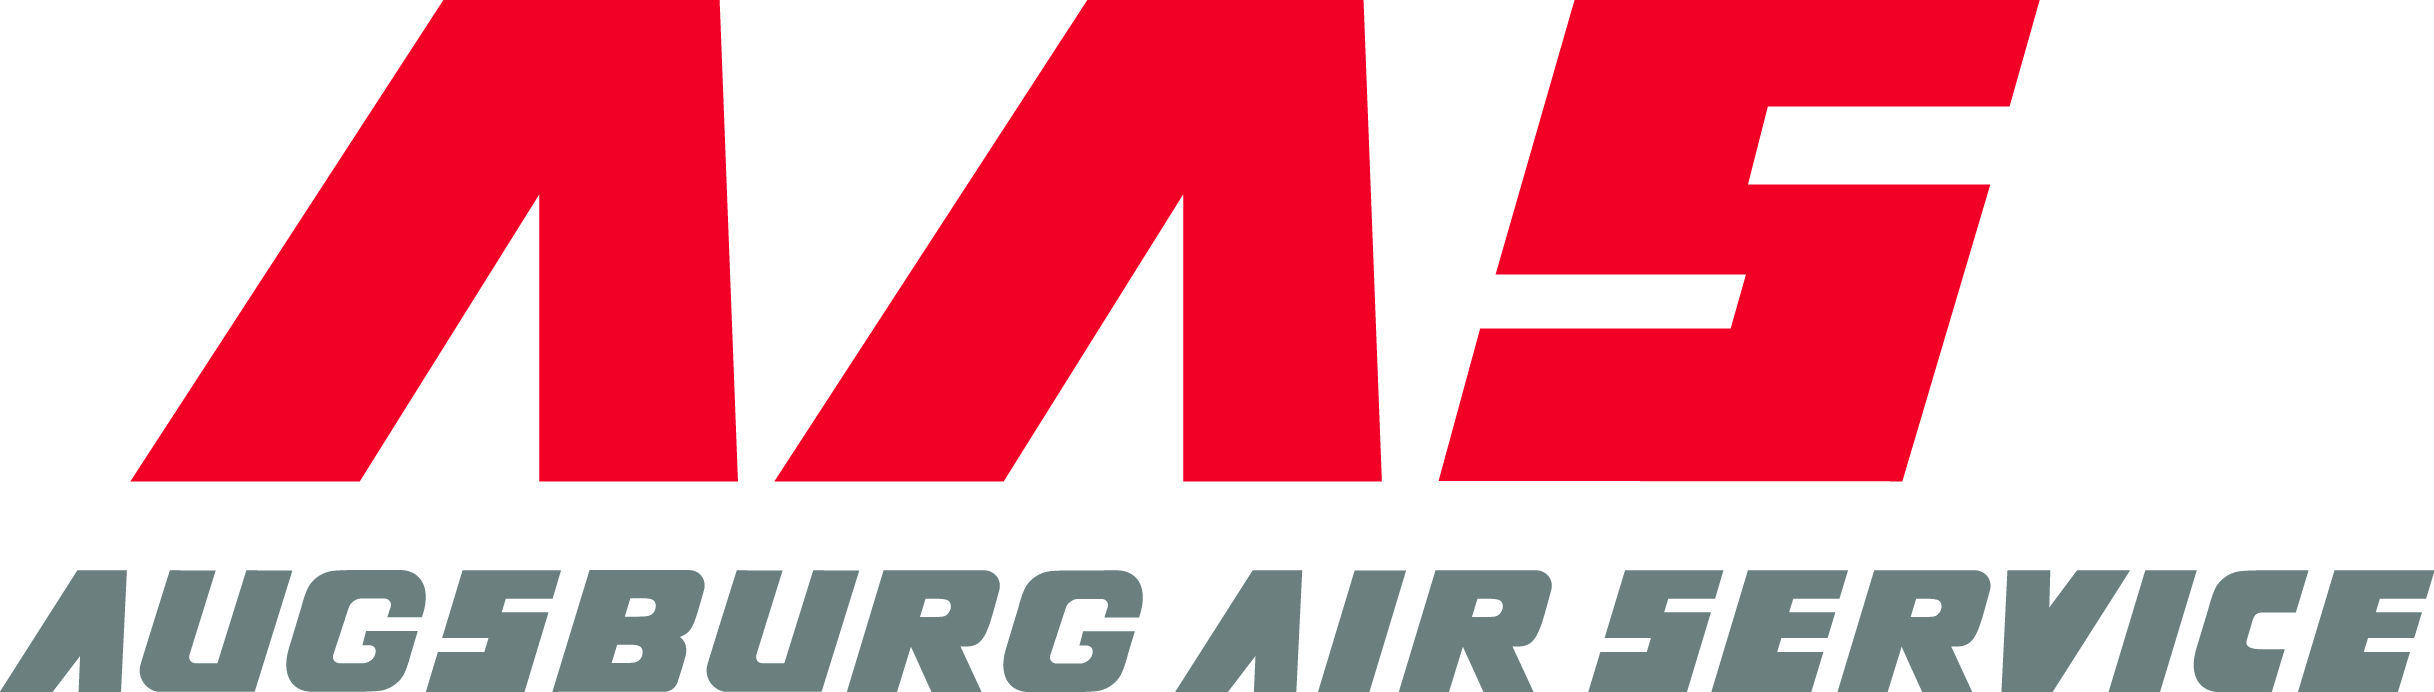 Augsburg Air Service GmbH